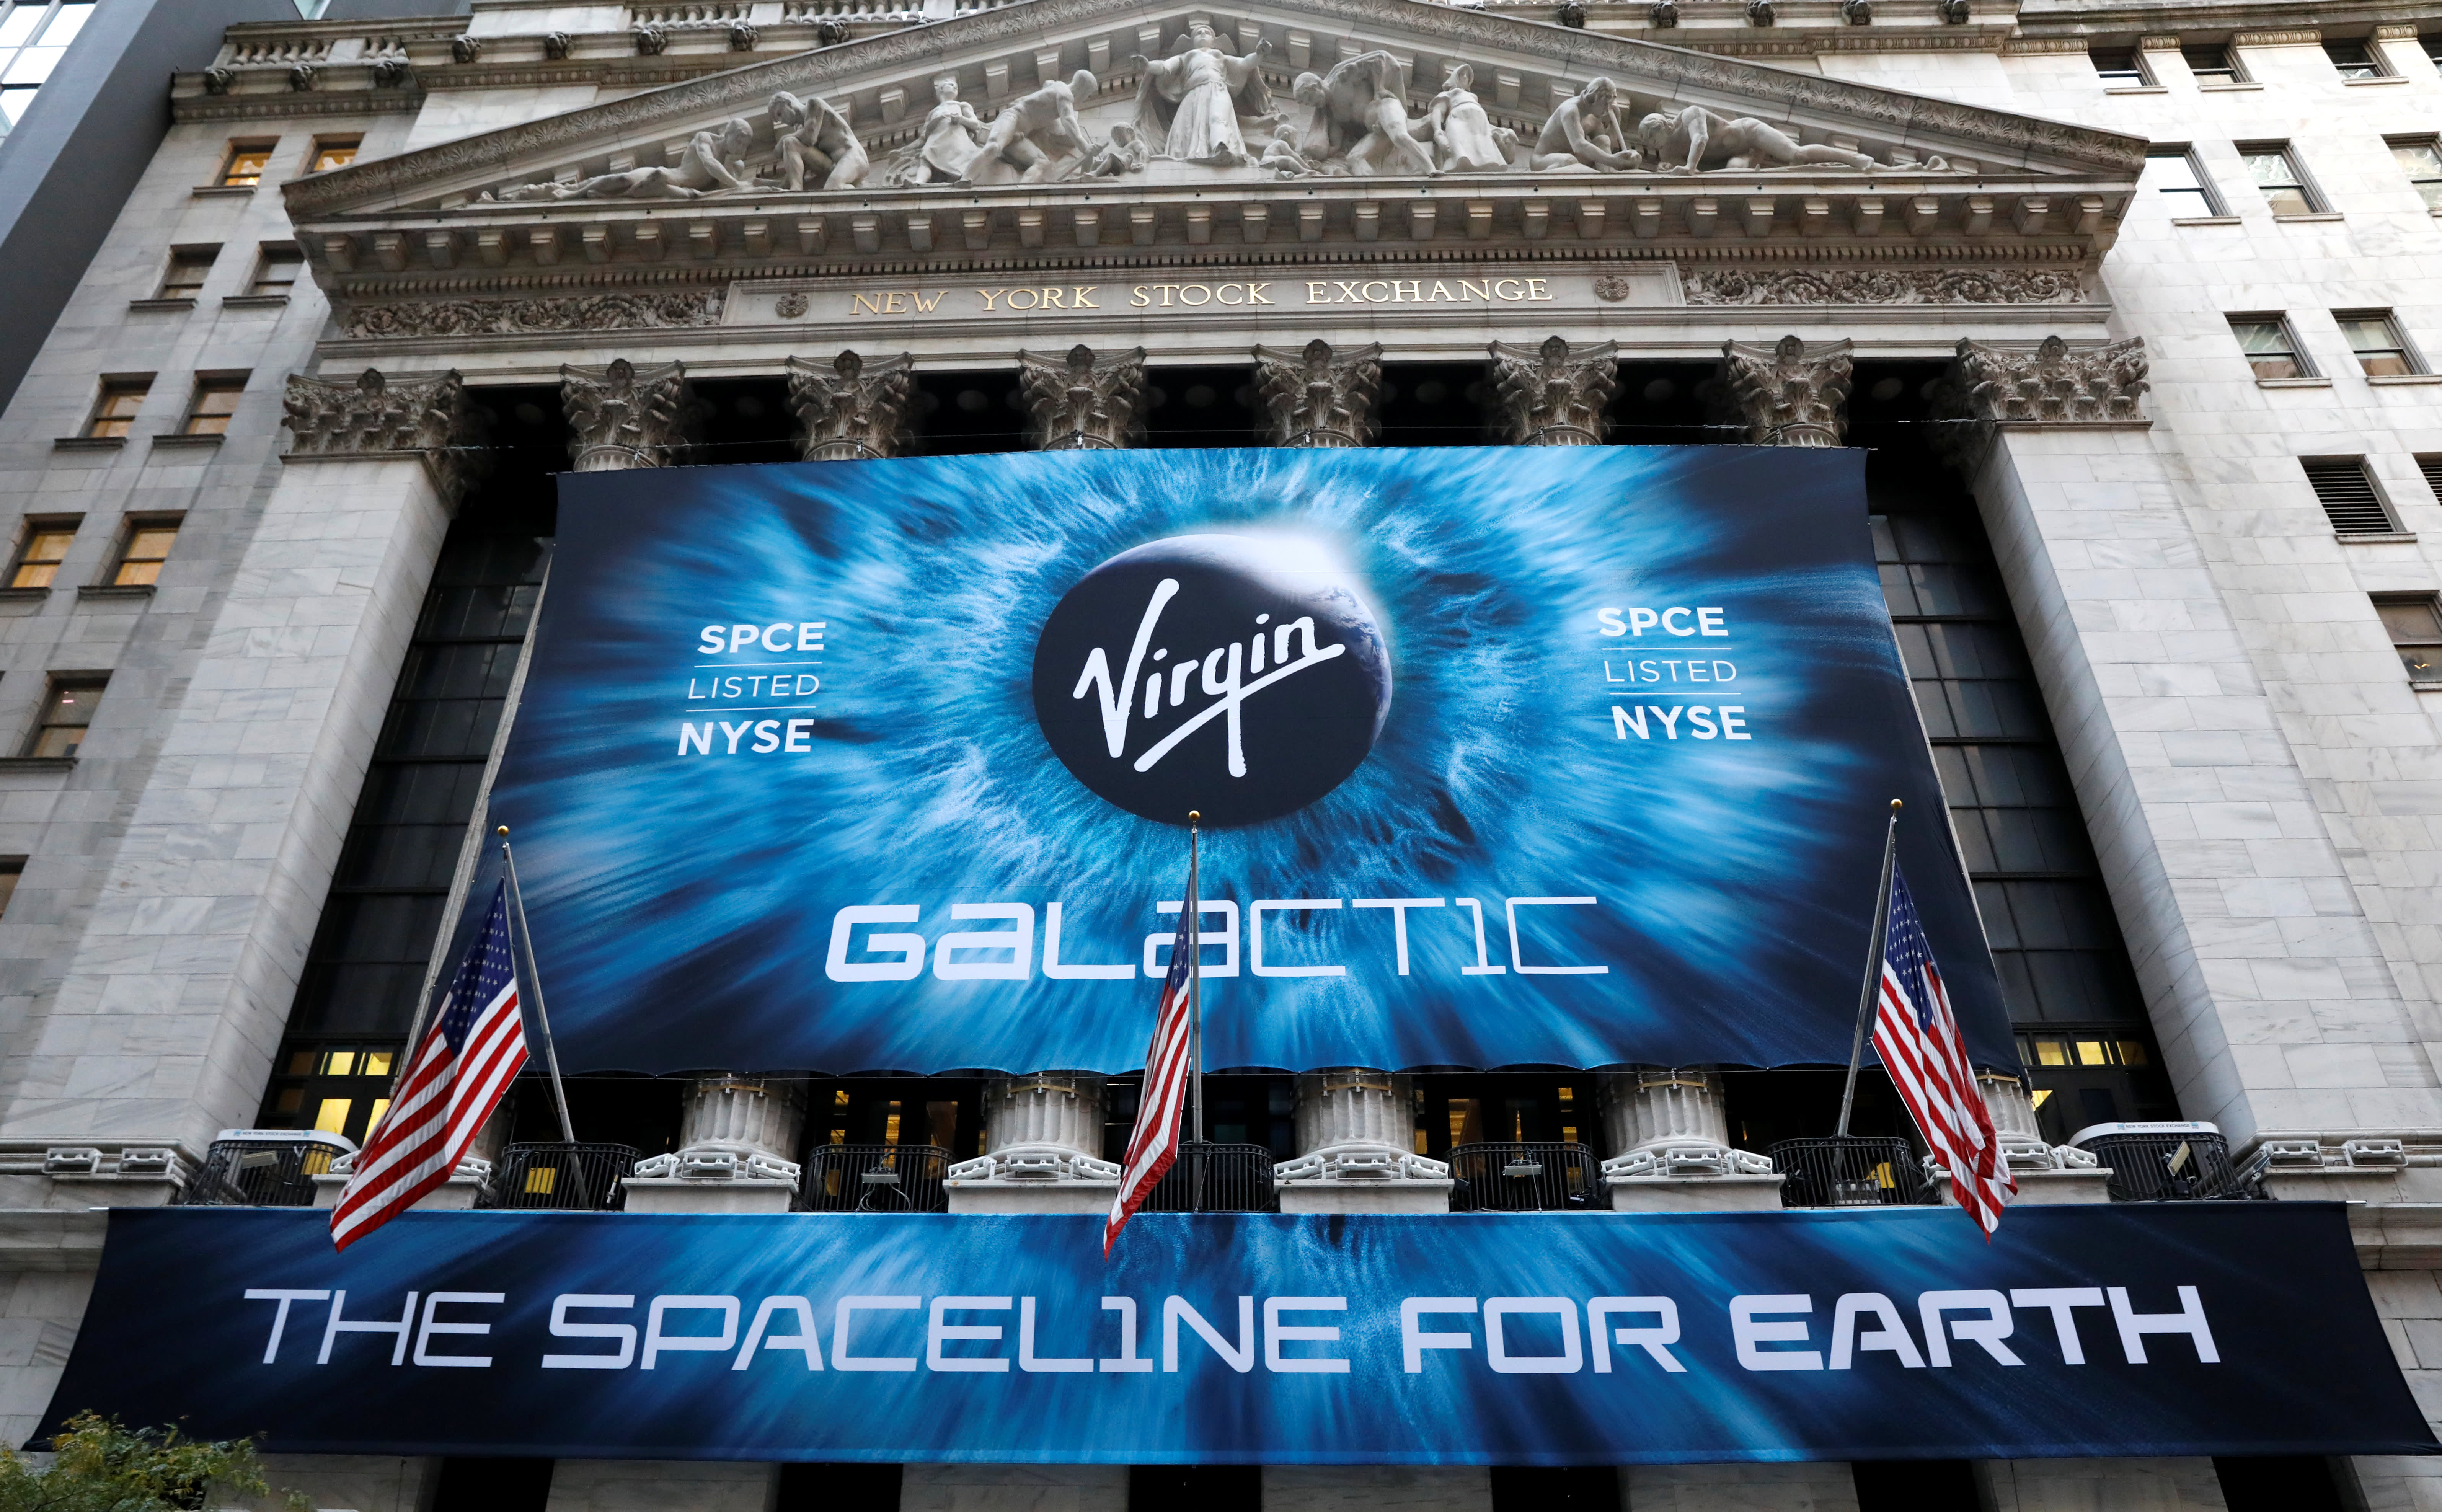 Virgin Galactic SPCE earnings in Q4 2020